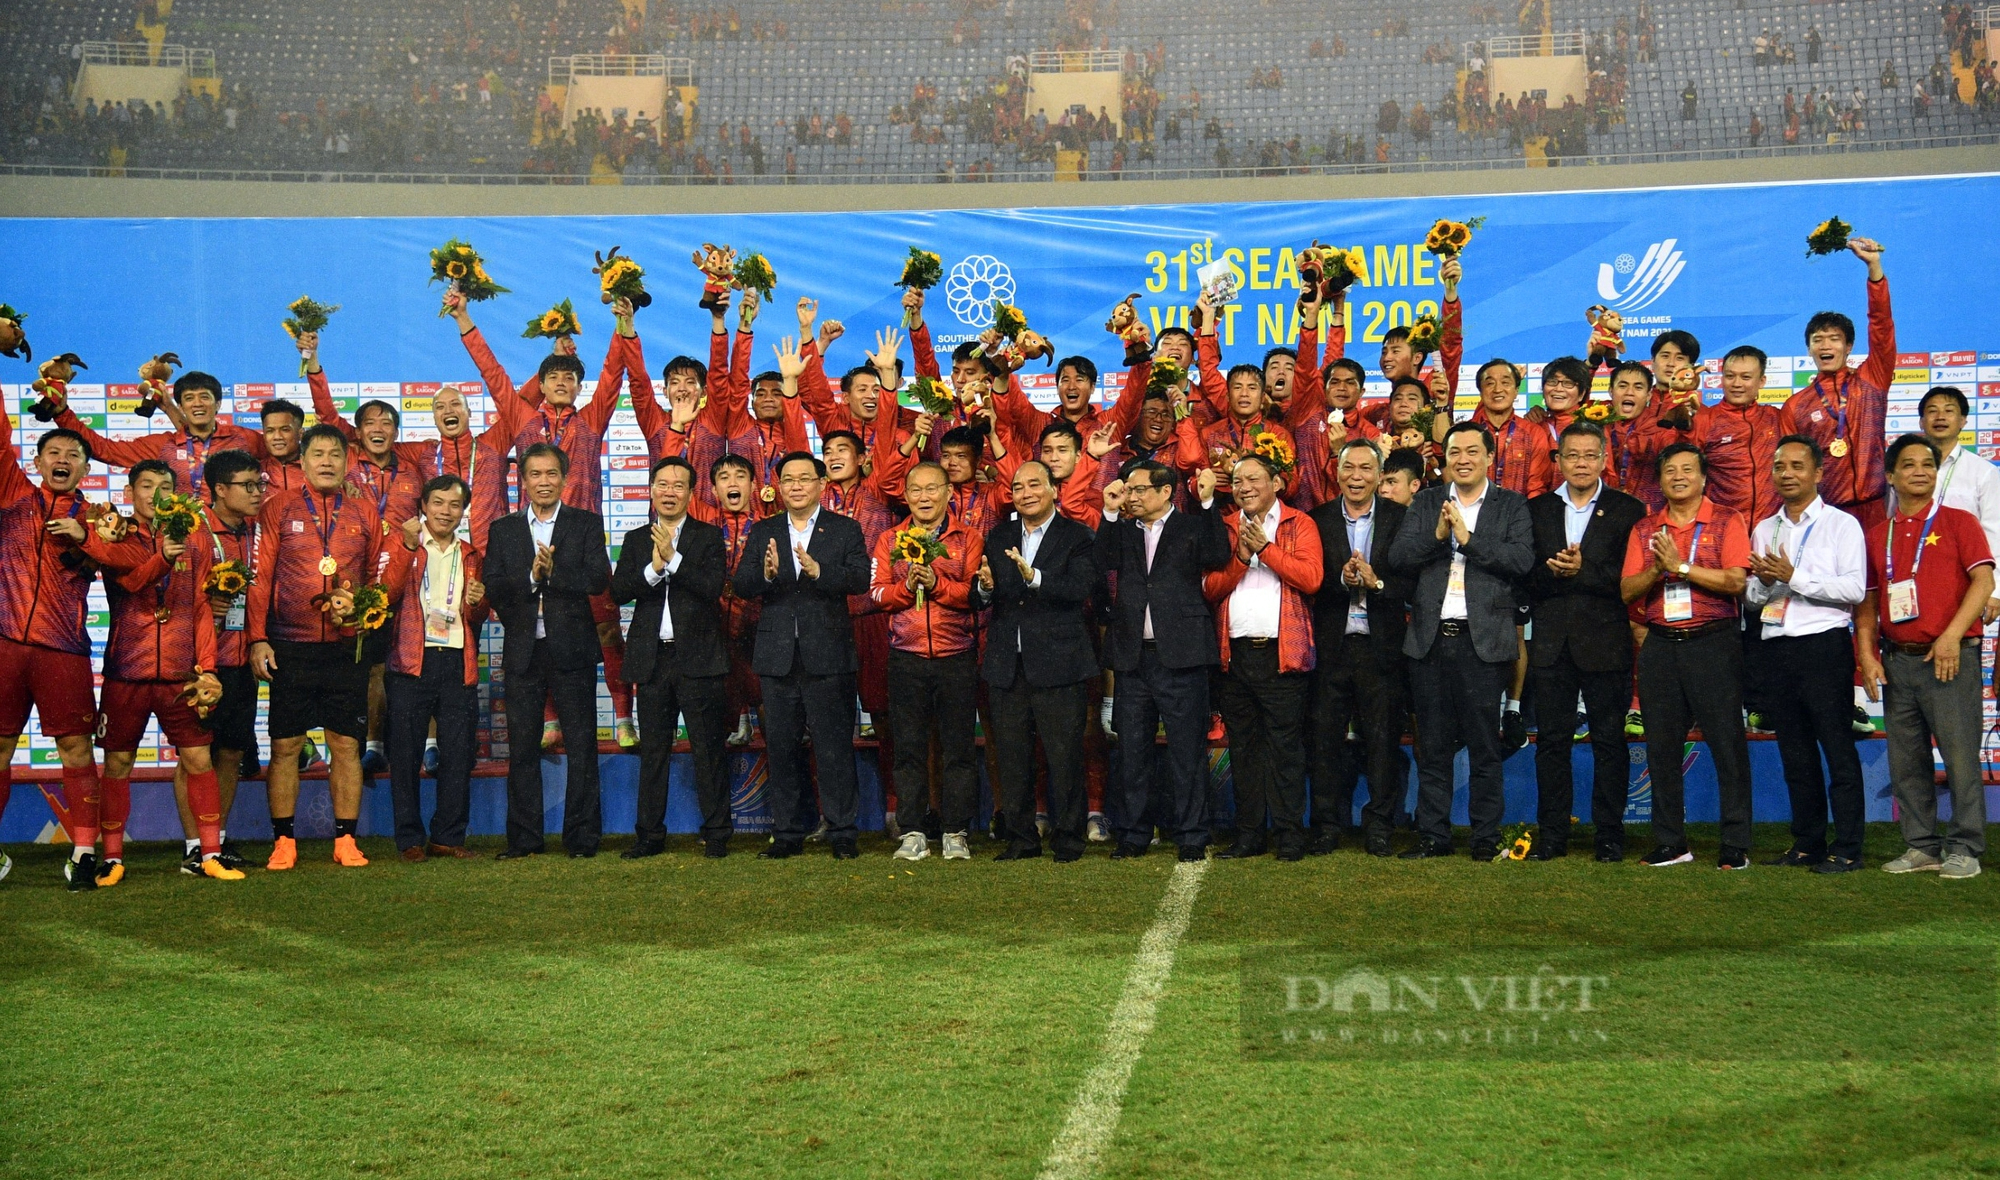 Lãnh đạo Đảng, Nhà nước chúc mừng U23 giành HC vàng - Ảnh 1.